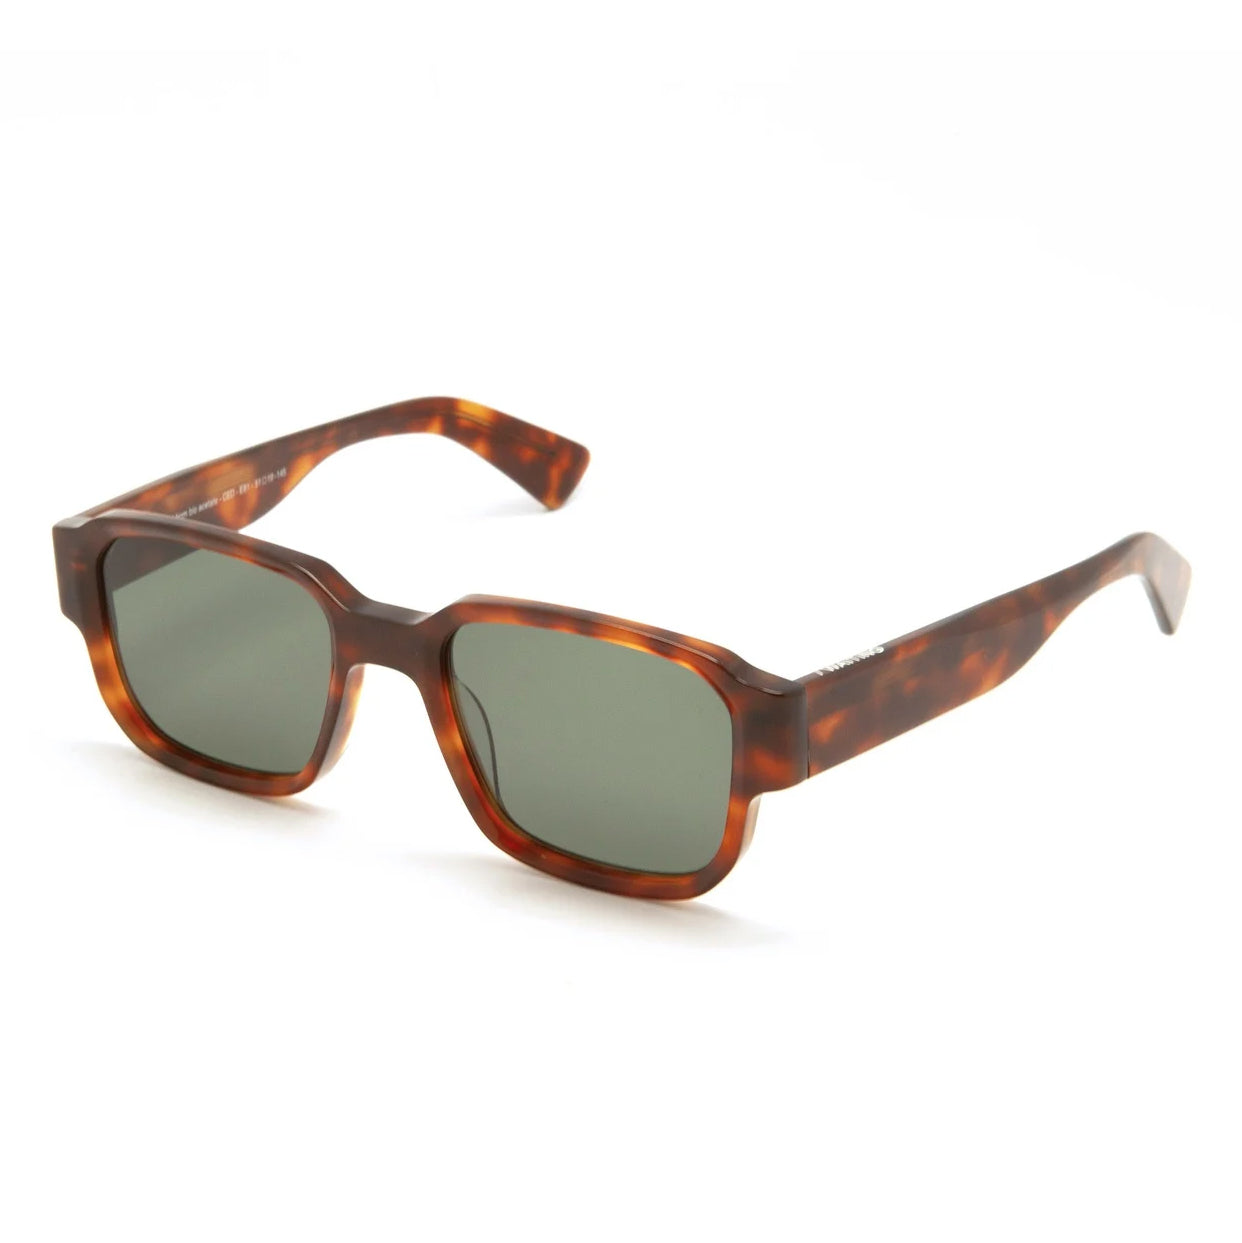 CED E81 Sunglasses - Tortoiseshell & Green Lens